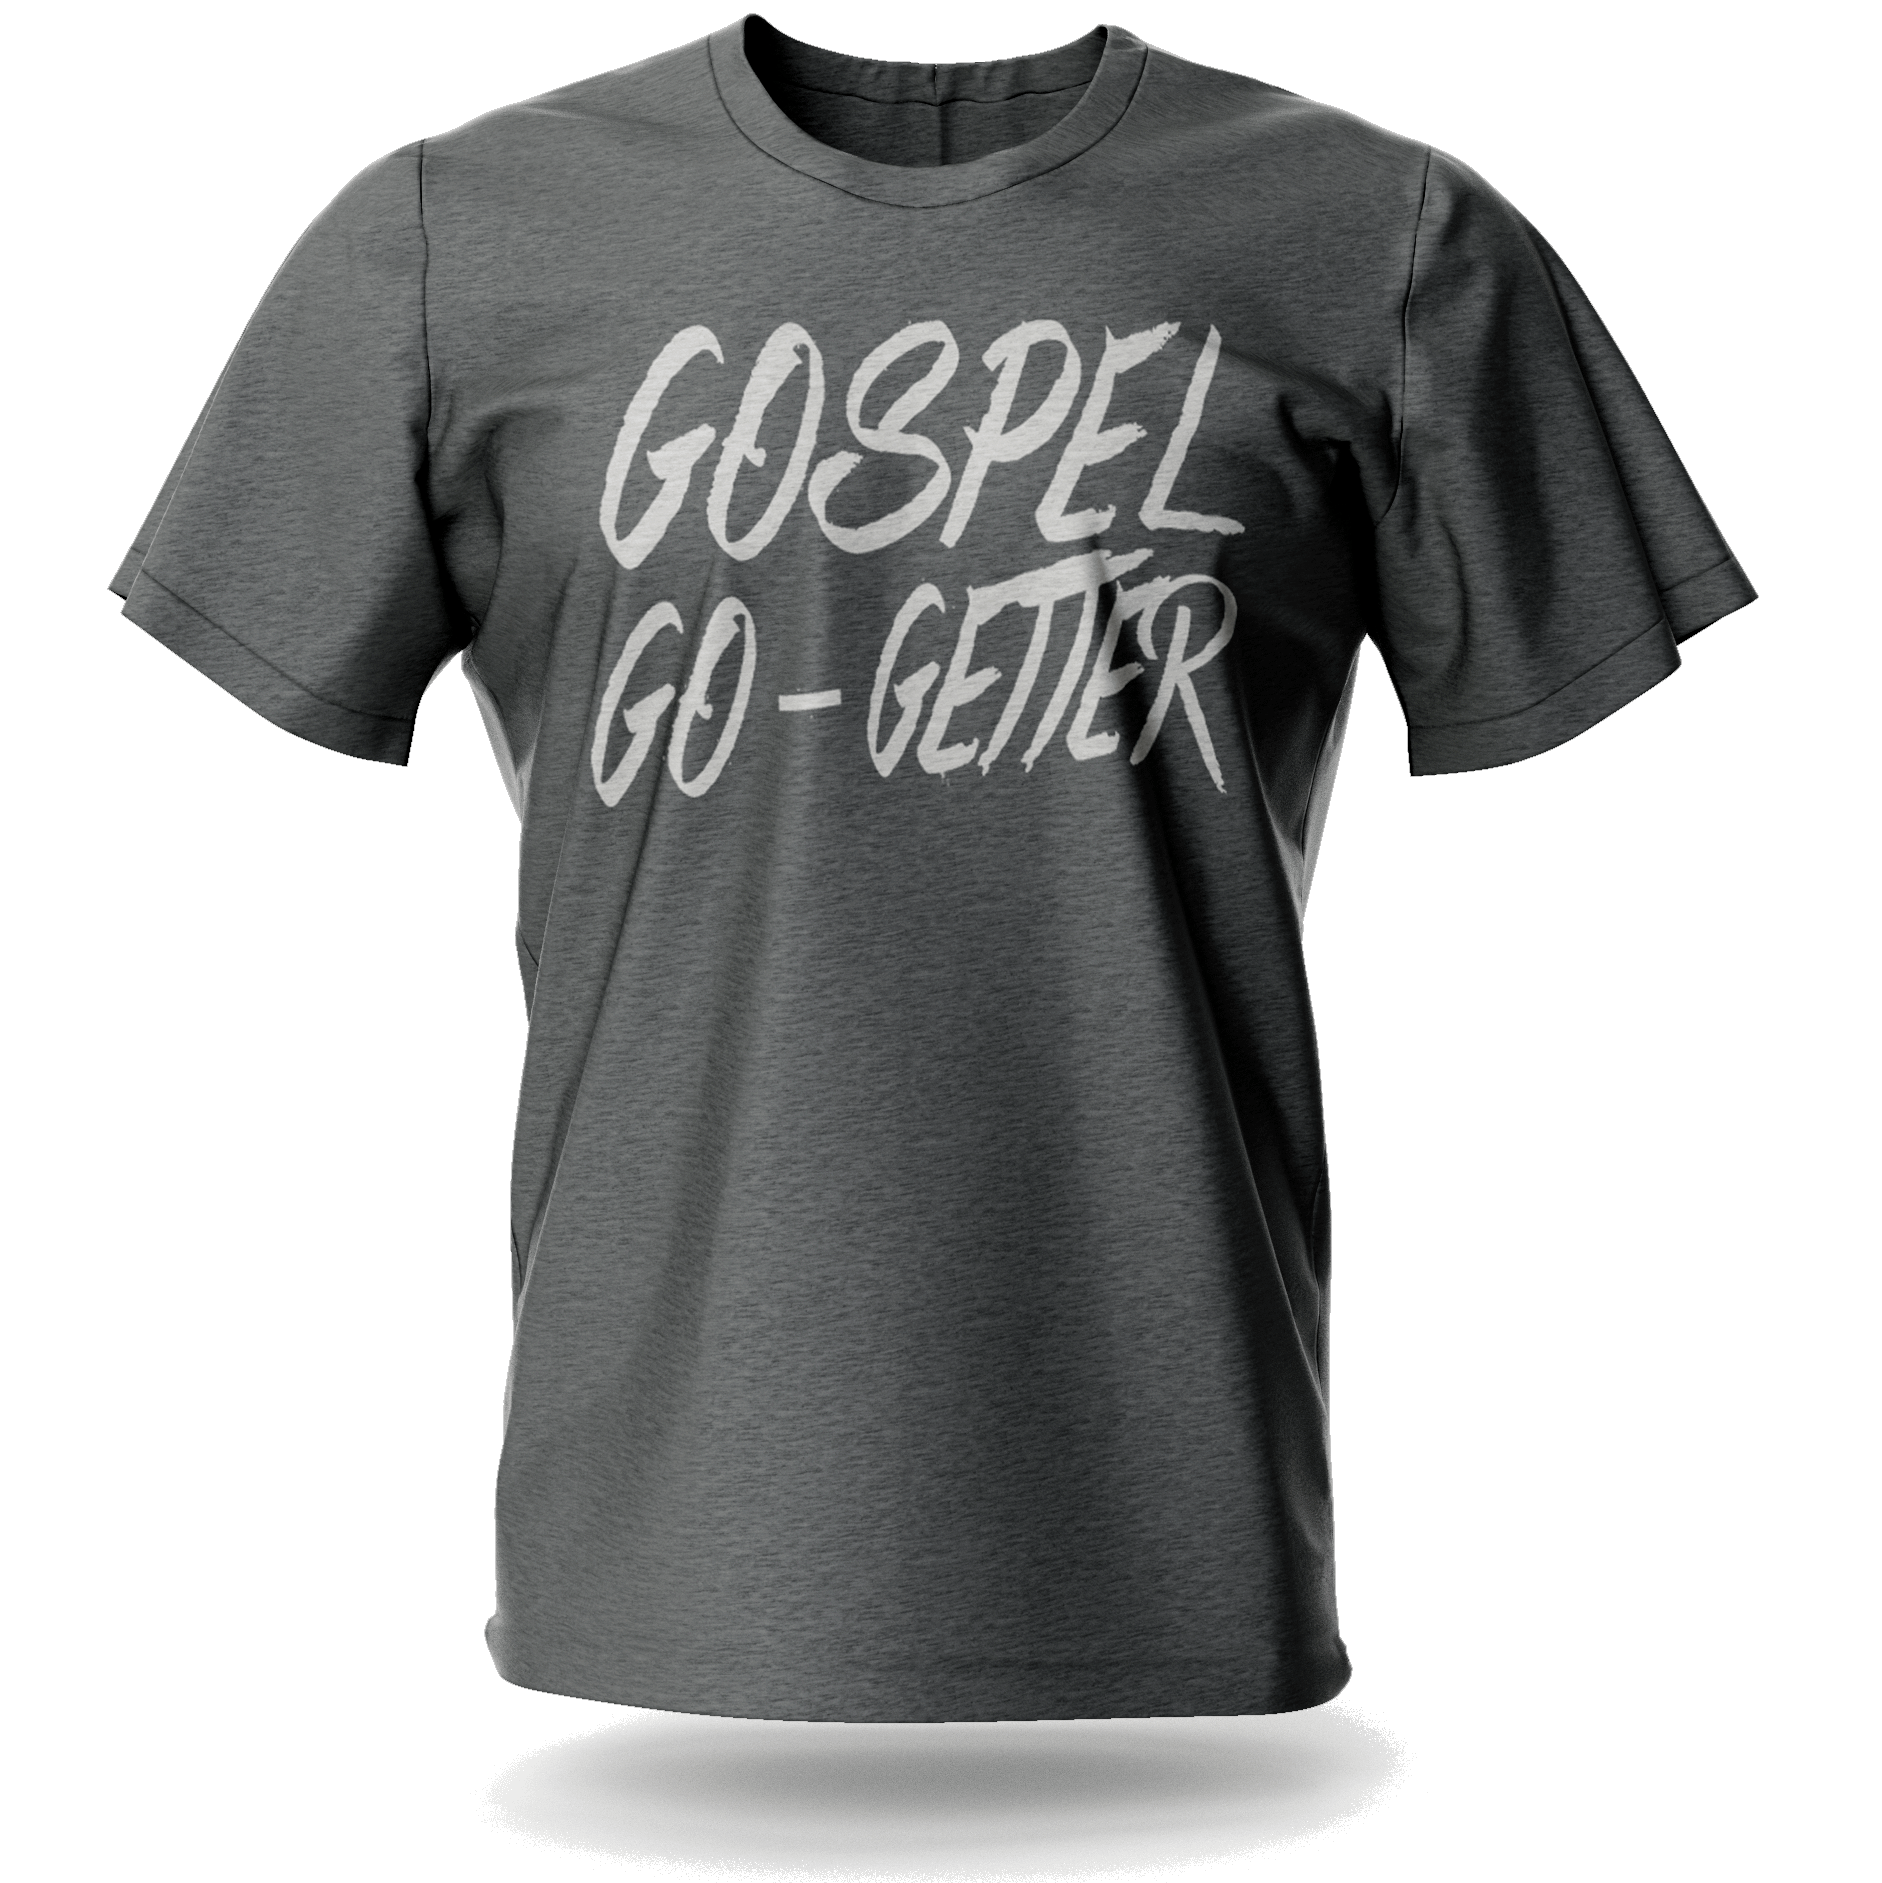 Gospel Go-Getter Tee